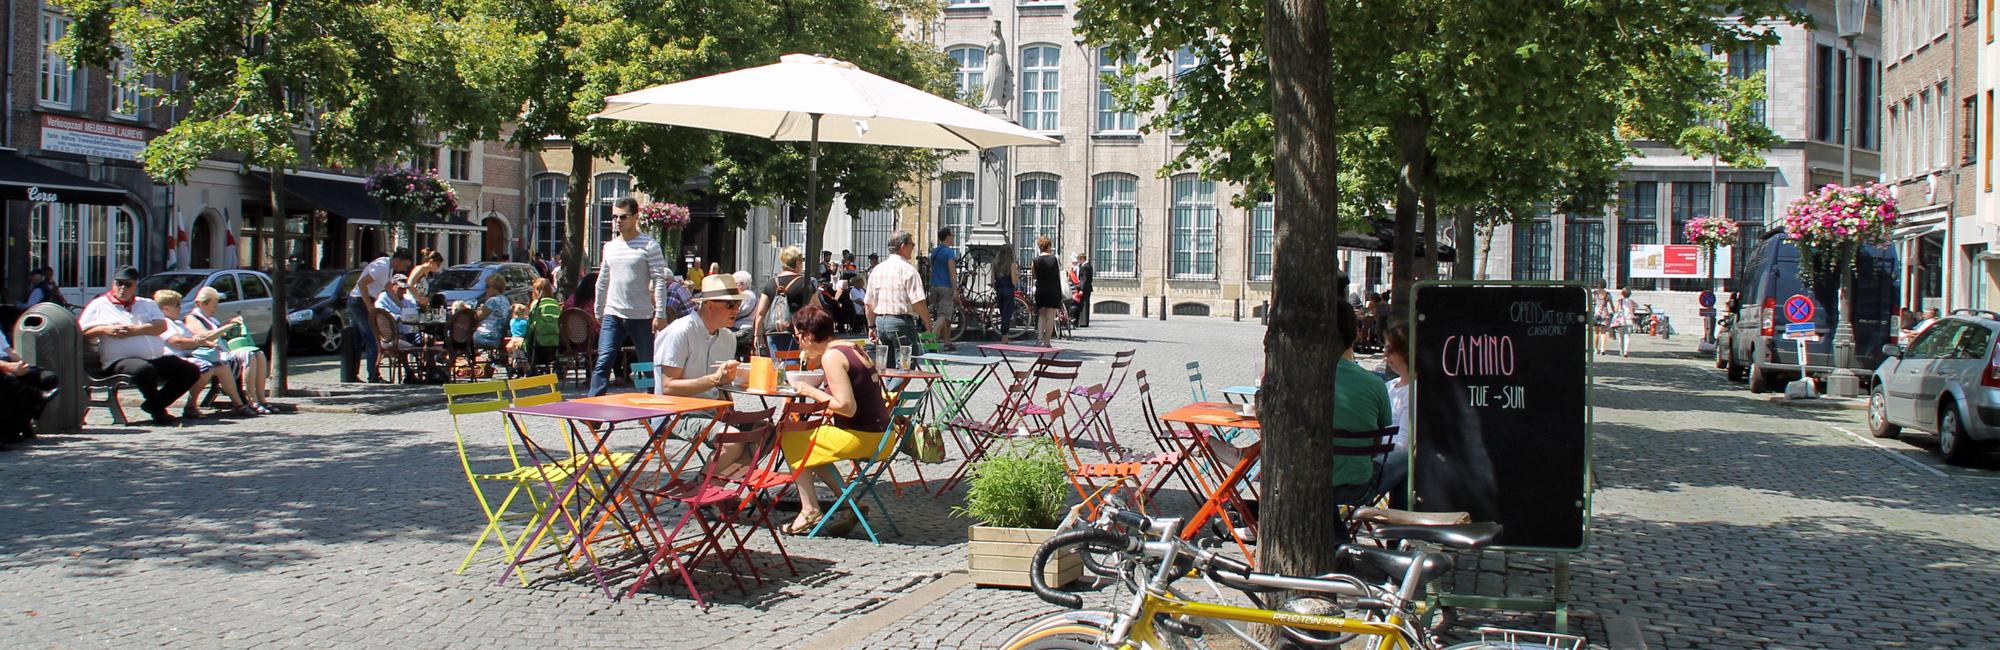 Fietsen in België? Boek uw fietsvakantie België bij Fietsrelax